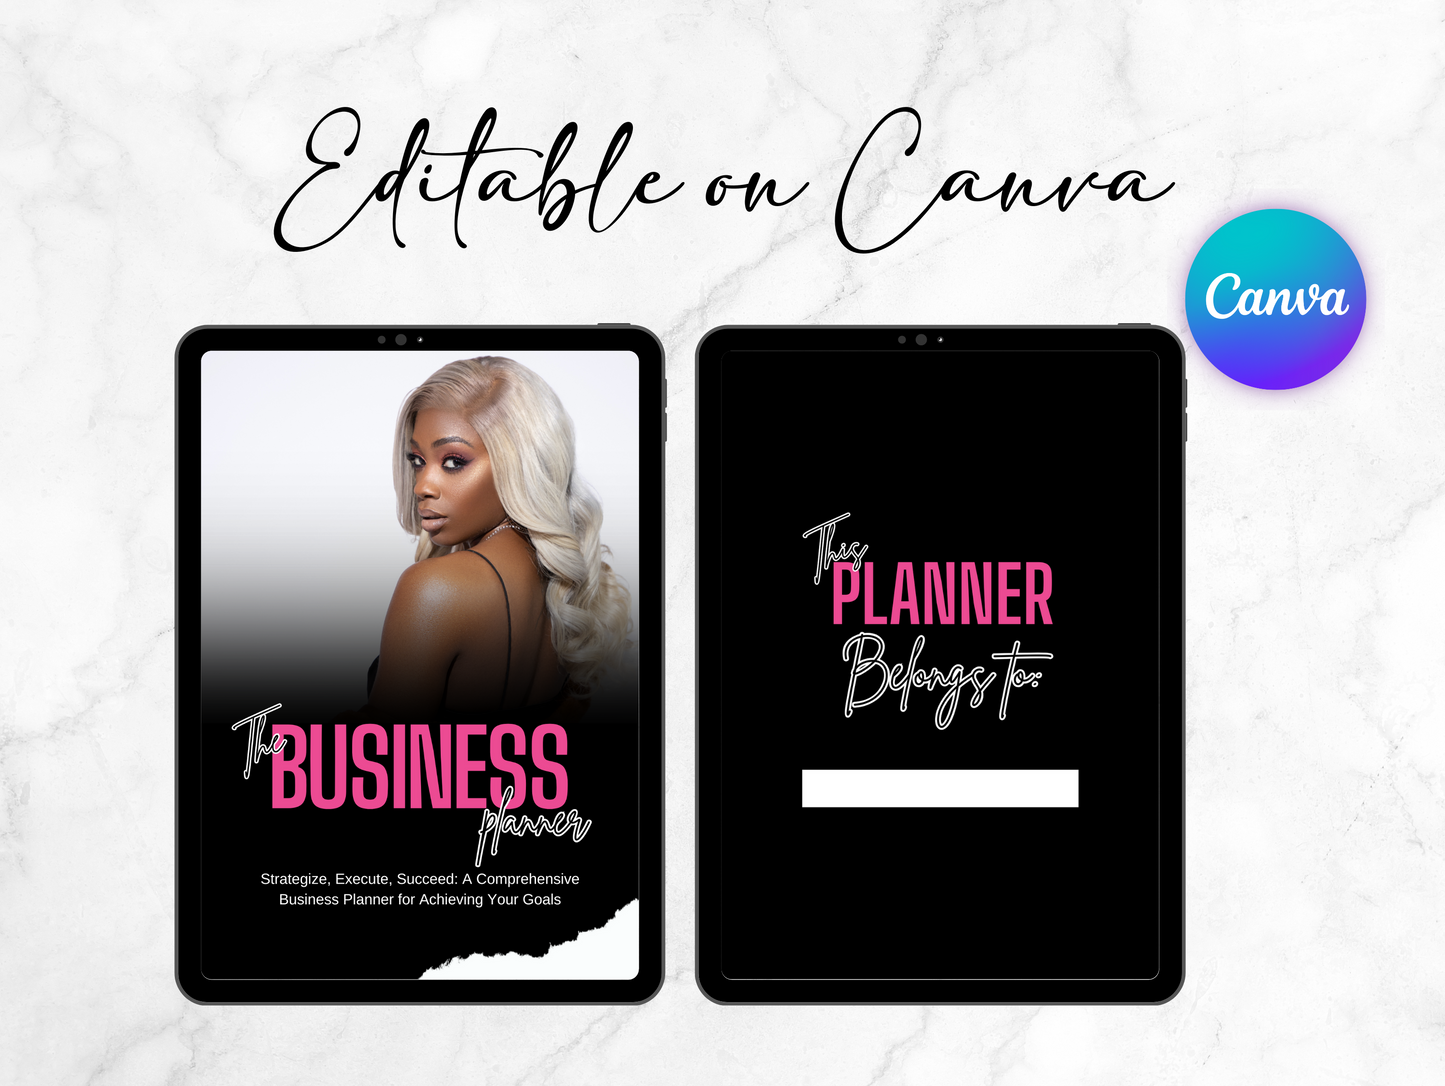 PLR Business Planner black girl entrepreneur